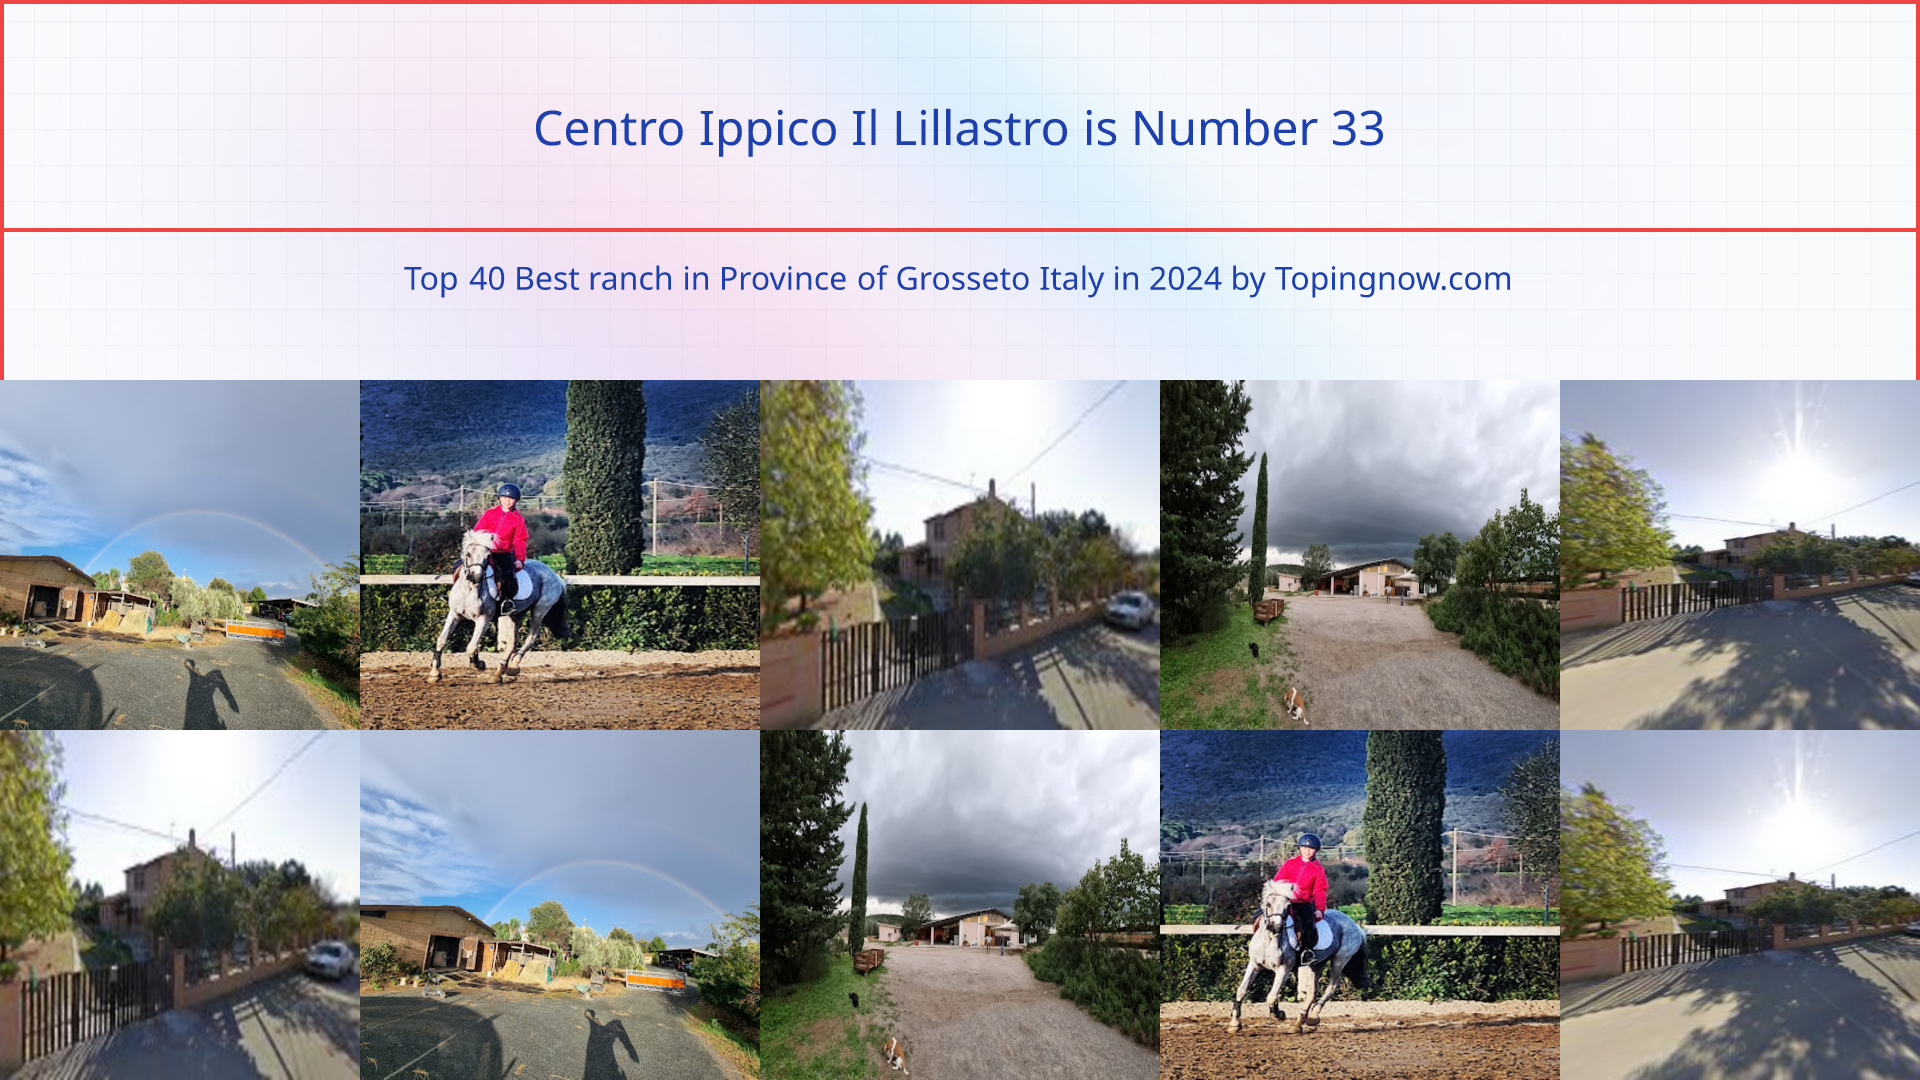 Centro Ippico Il Lillastro: Top 40 Best ranch in Province of Grosseto Italy in 2024